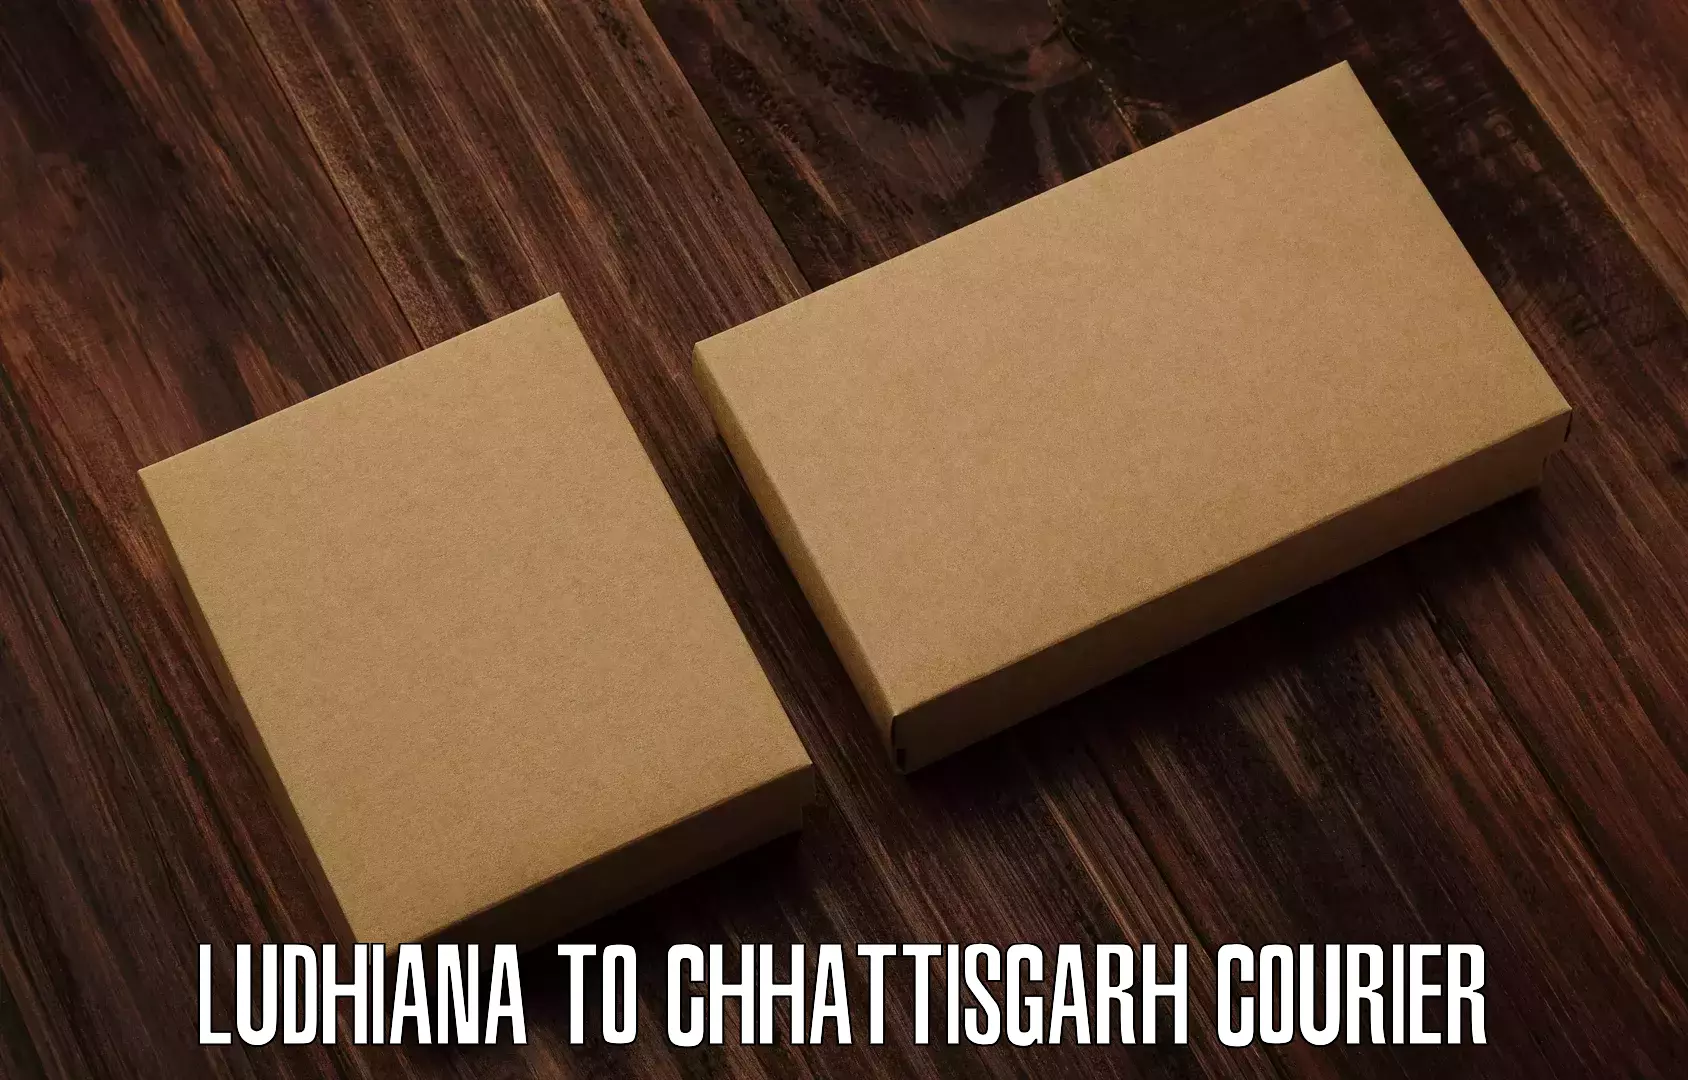 Affordable parcel service in Ludhiana to Korea Chhattisgarh